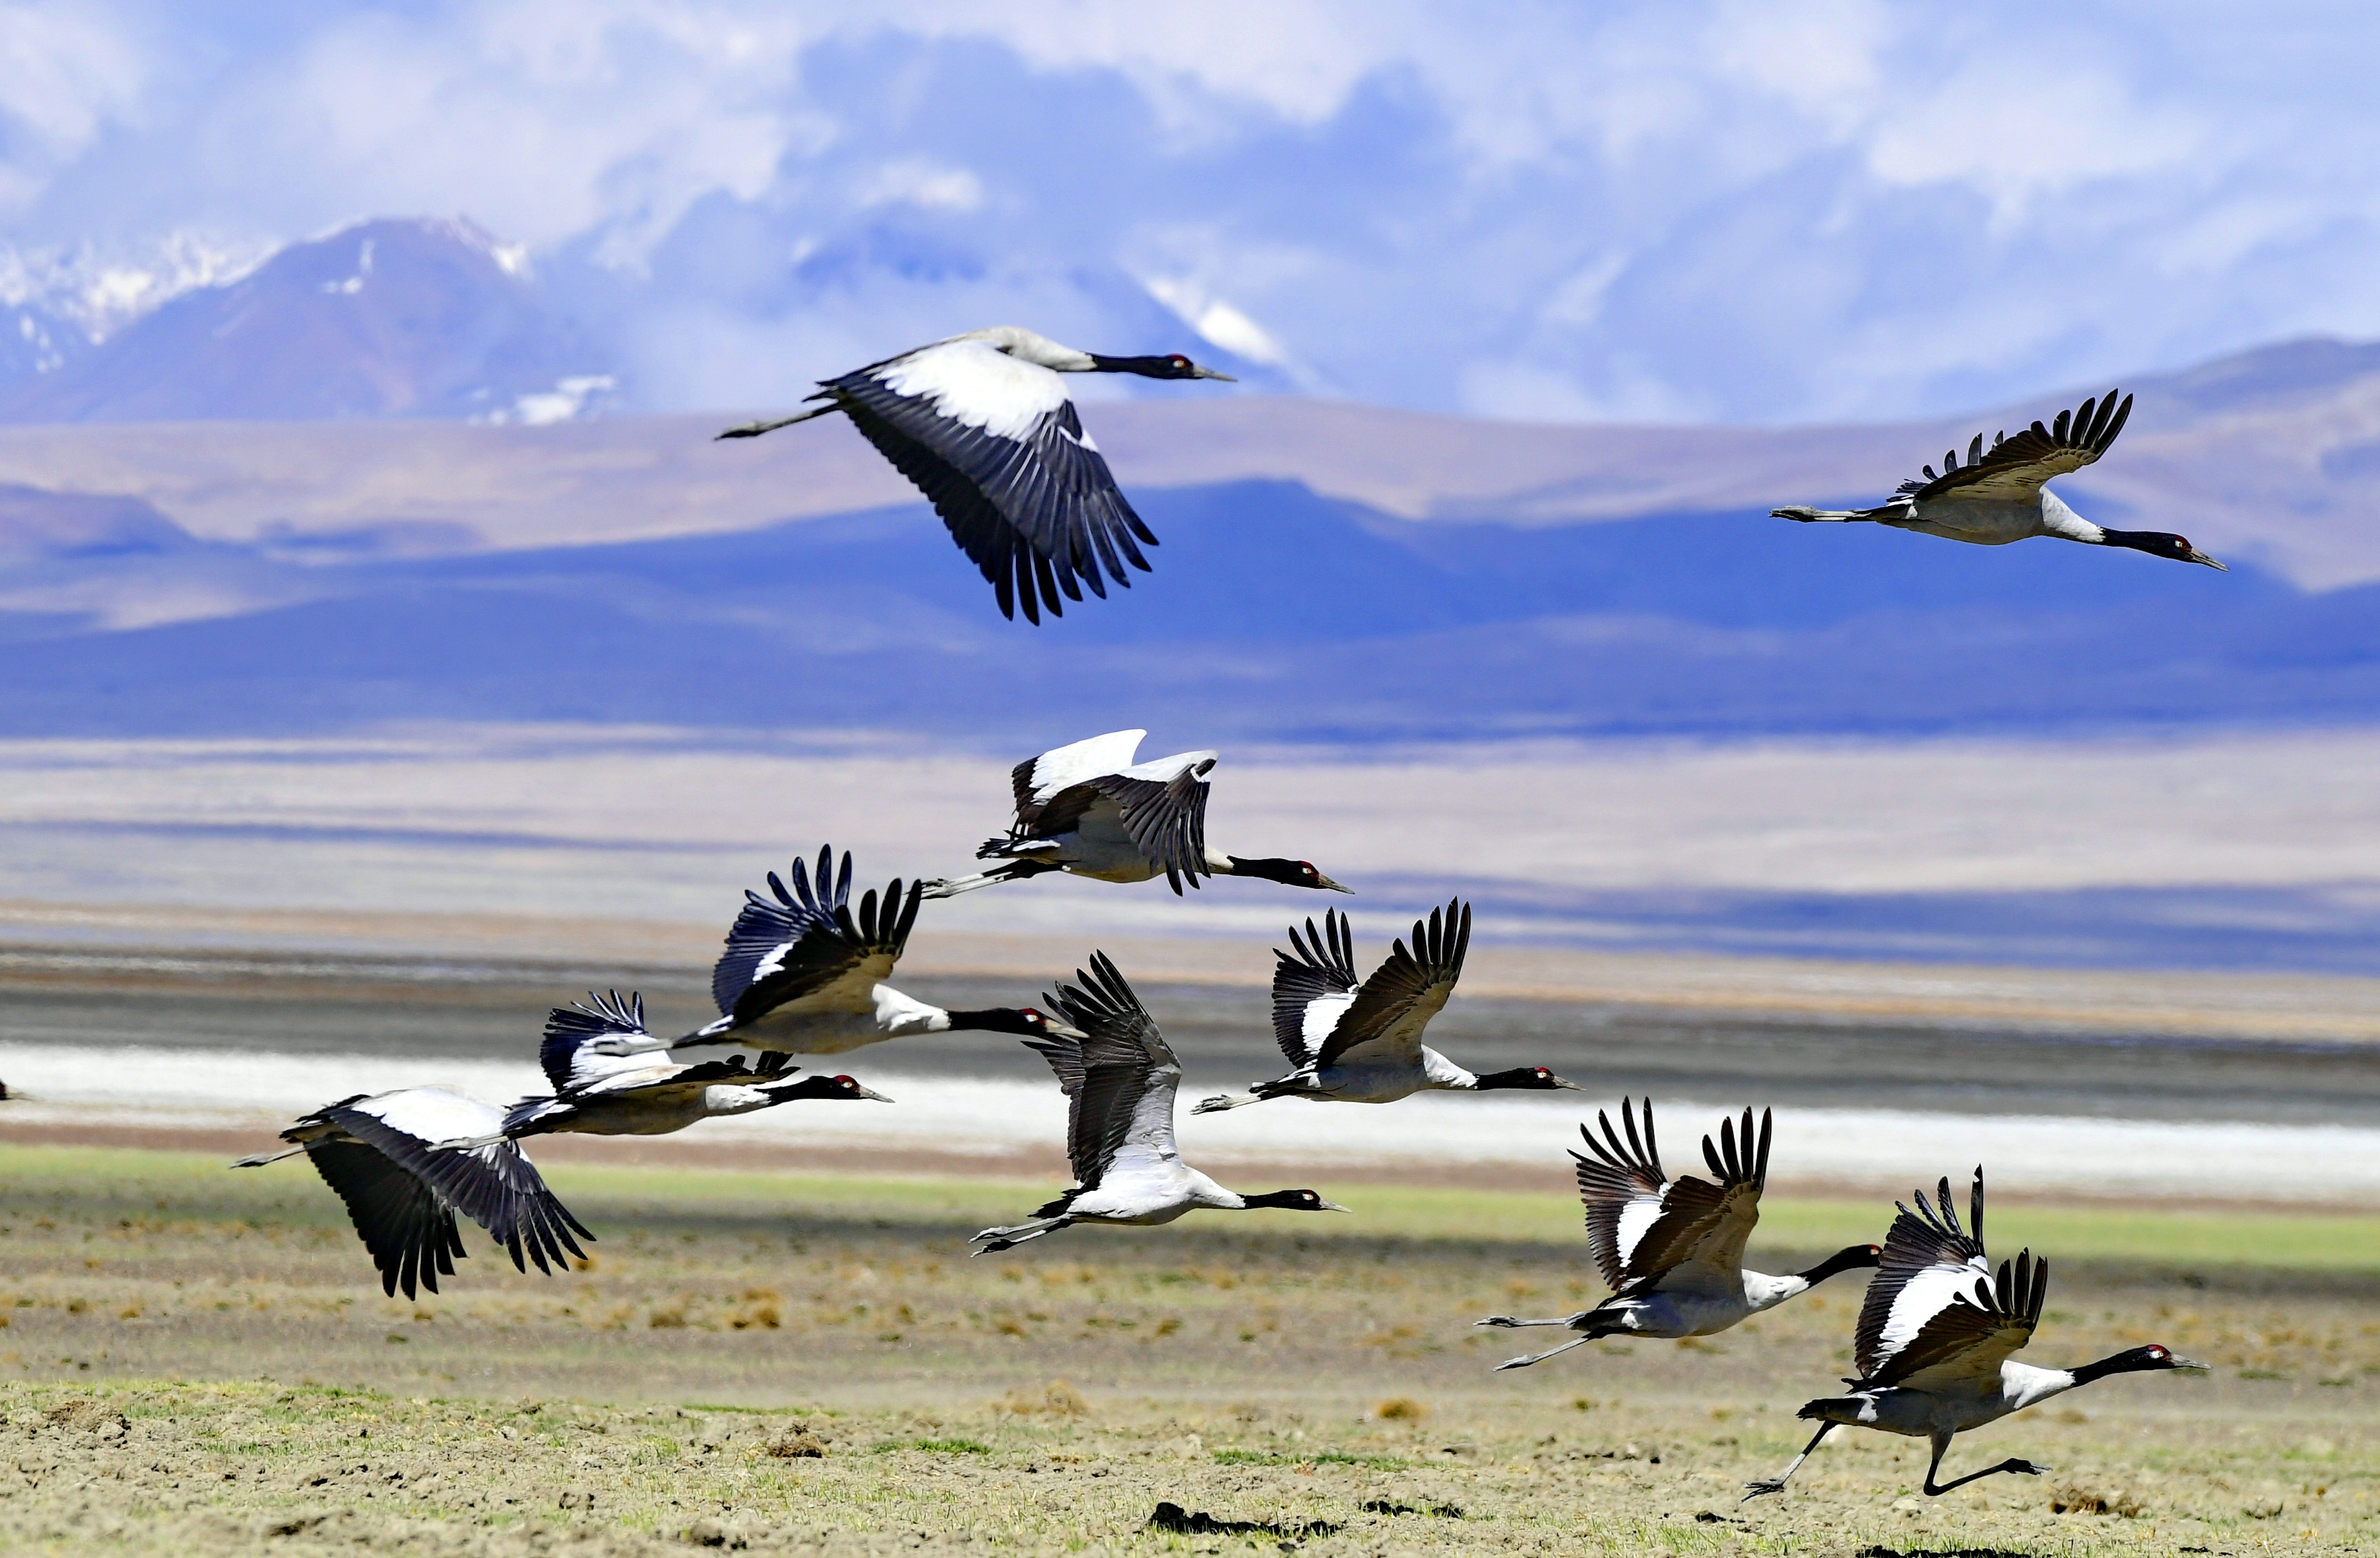 四川甘孜察青松多保护区首次发现国家一级保护动物黑颈鹤-聚焦甘孜-康巴传媒网